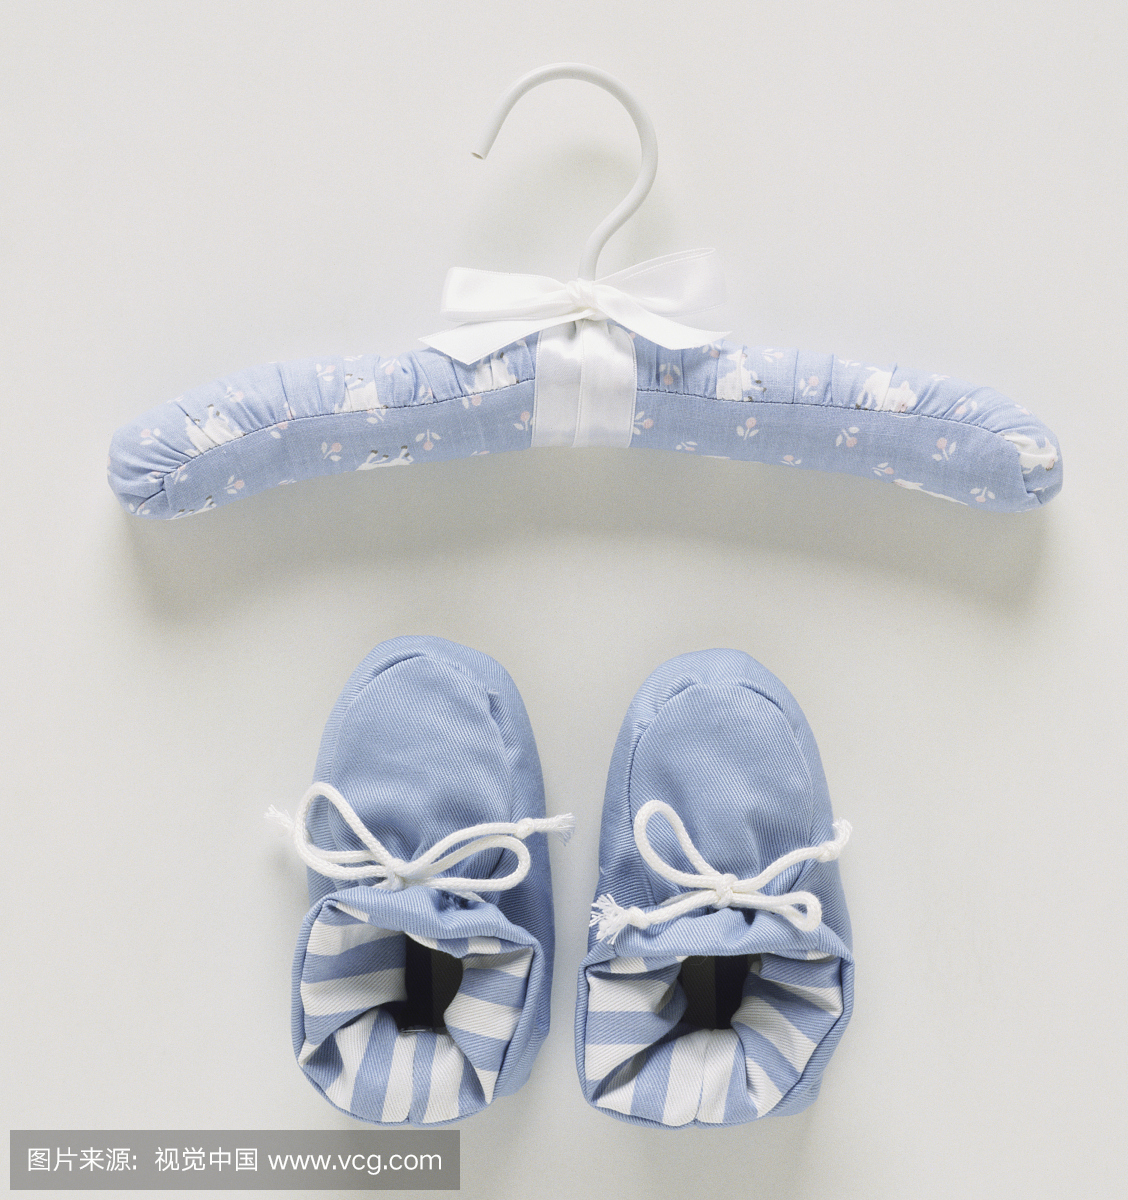 蓝色和白色的衣架和一双婴儿鞋